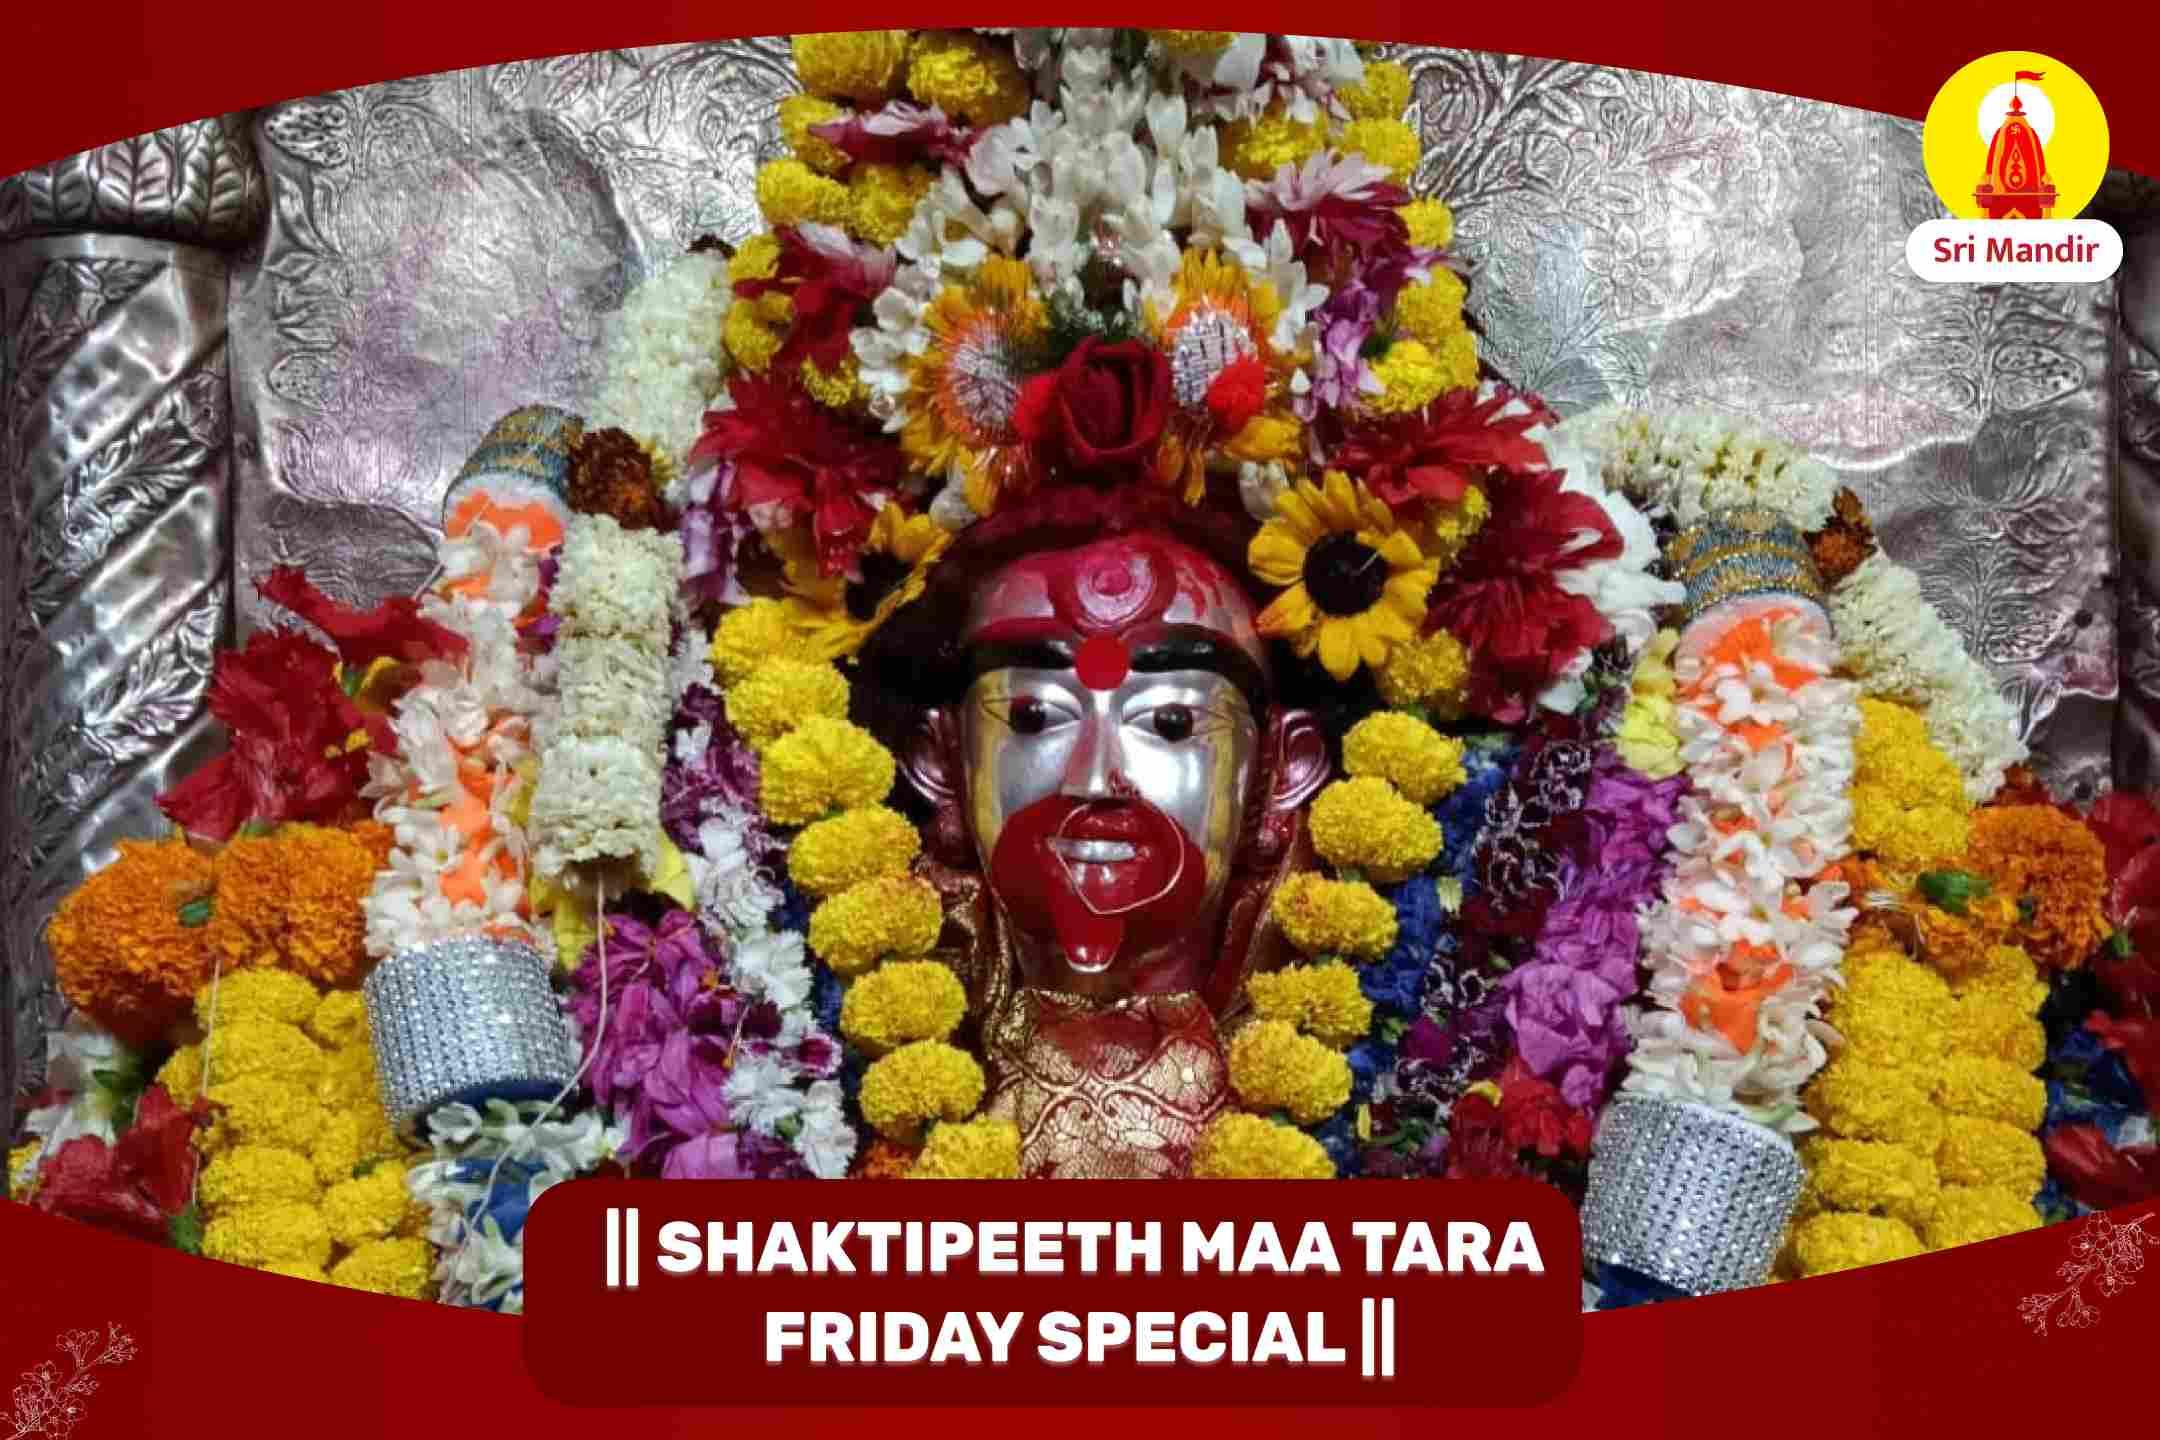  Shaktipeeth Friday Special Maha Vidya Tara Siddha Maha Yagya and Ashtottara Namavali for Protection from Adversities